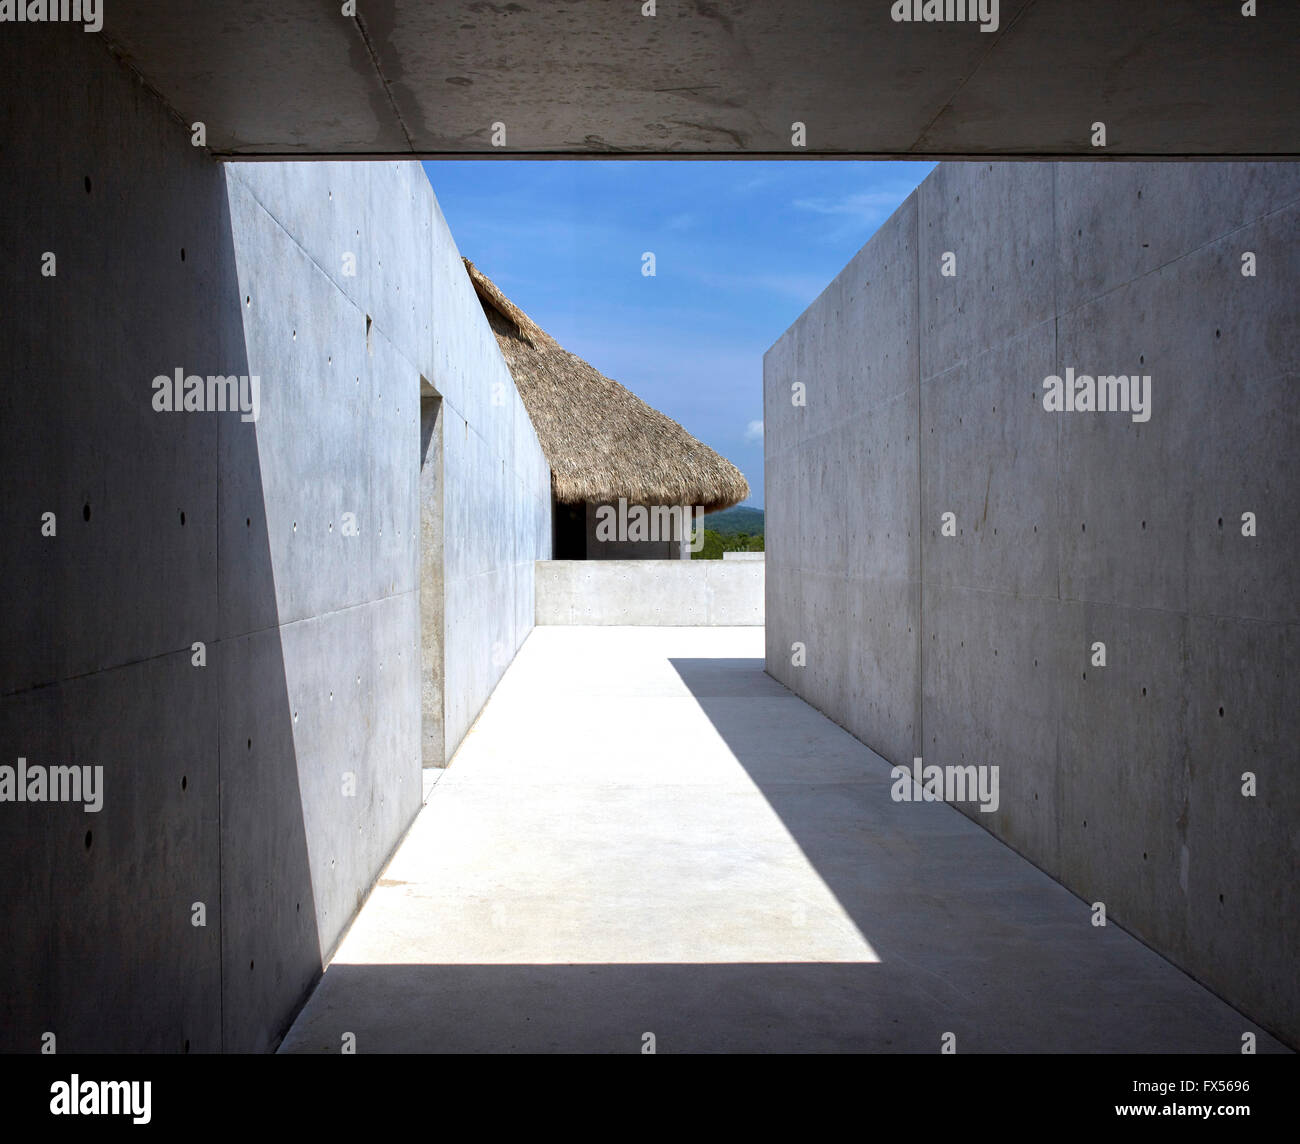 Gerahmte Blick auf wichtigsten Gehweg zwischen Studios und Palapa. Casa Wabi, Puerto Escondido, Mexiko. Architekt: Tadao Ando, 2015. Stockfoto